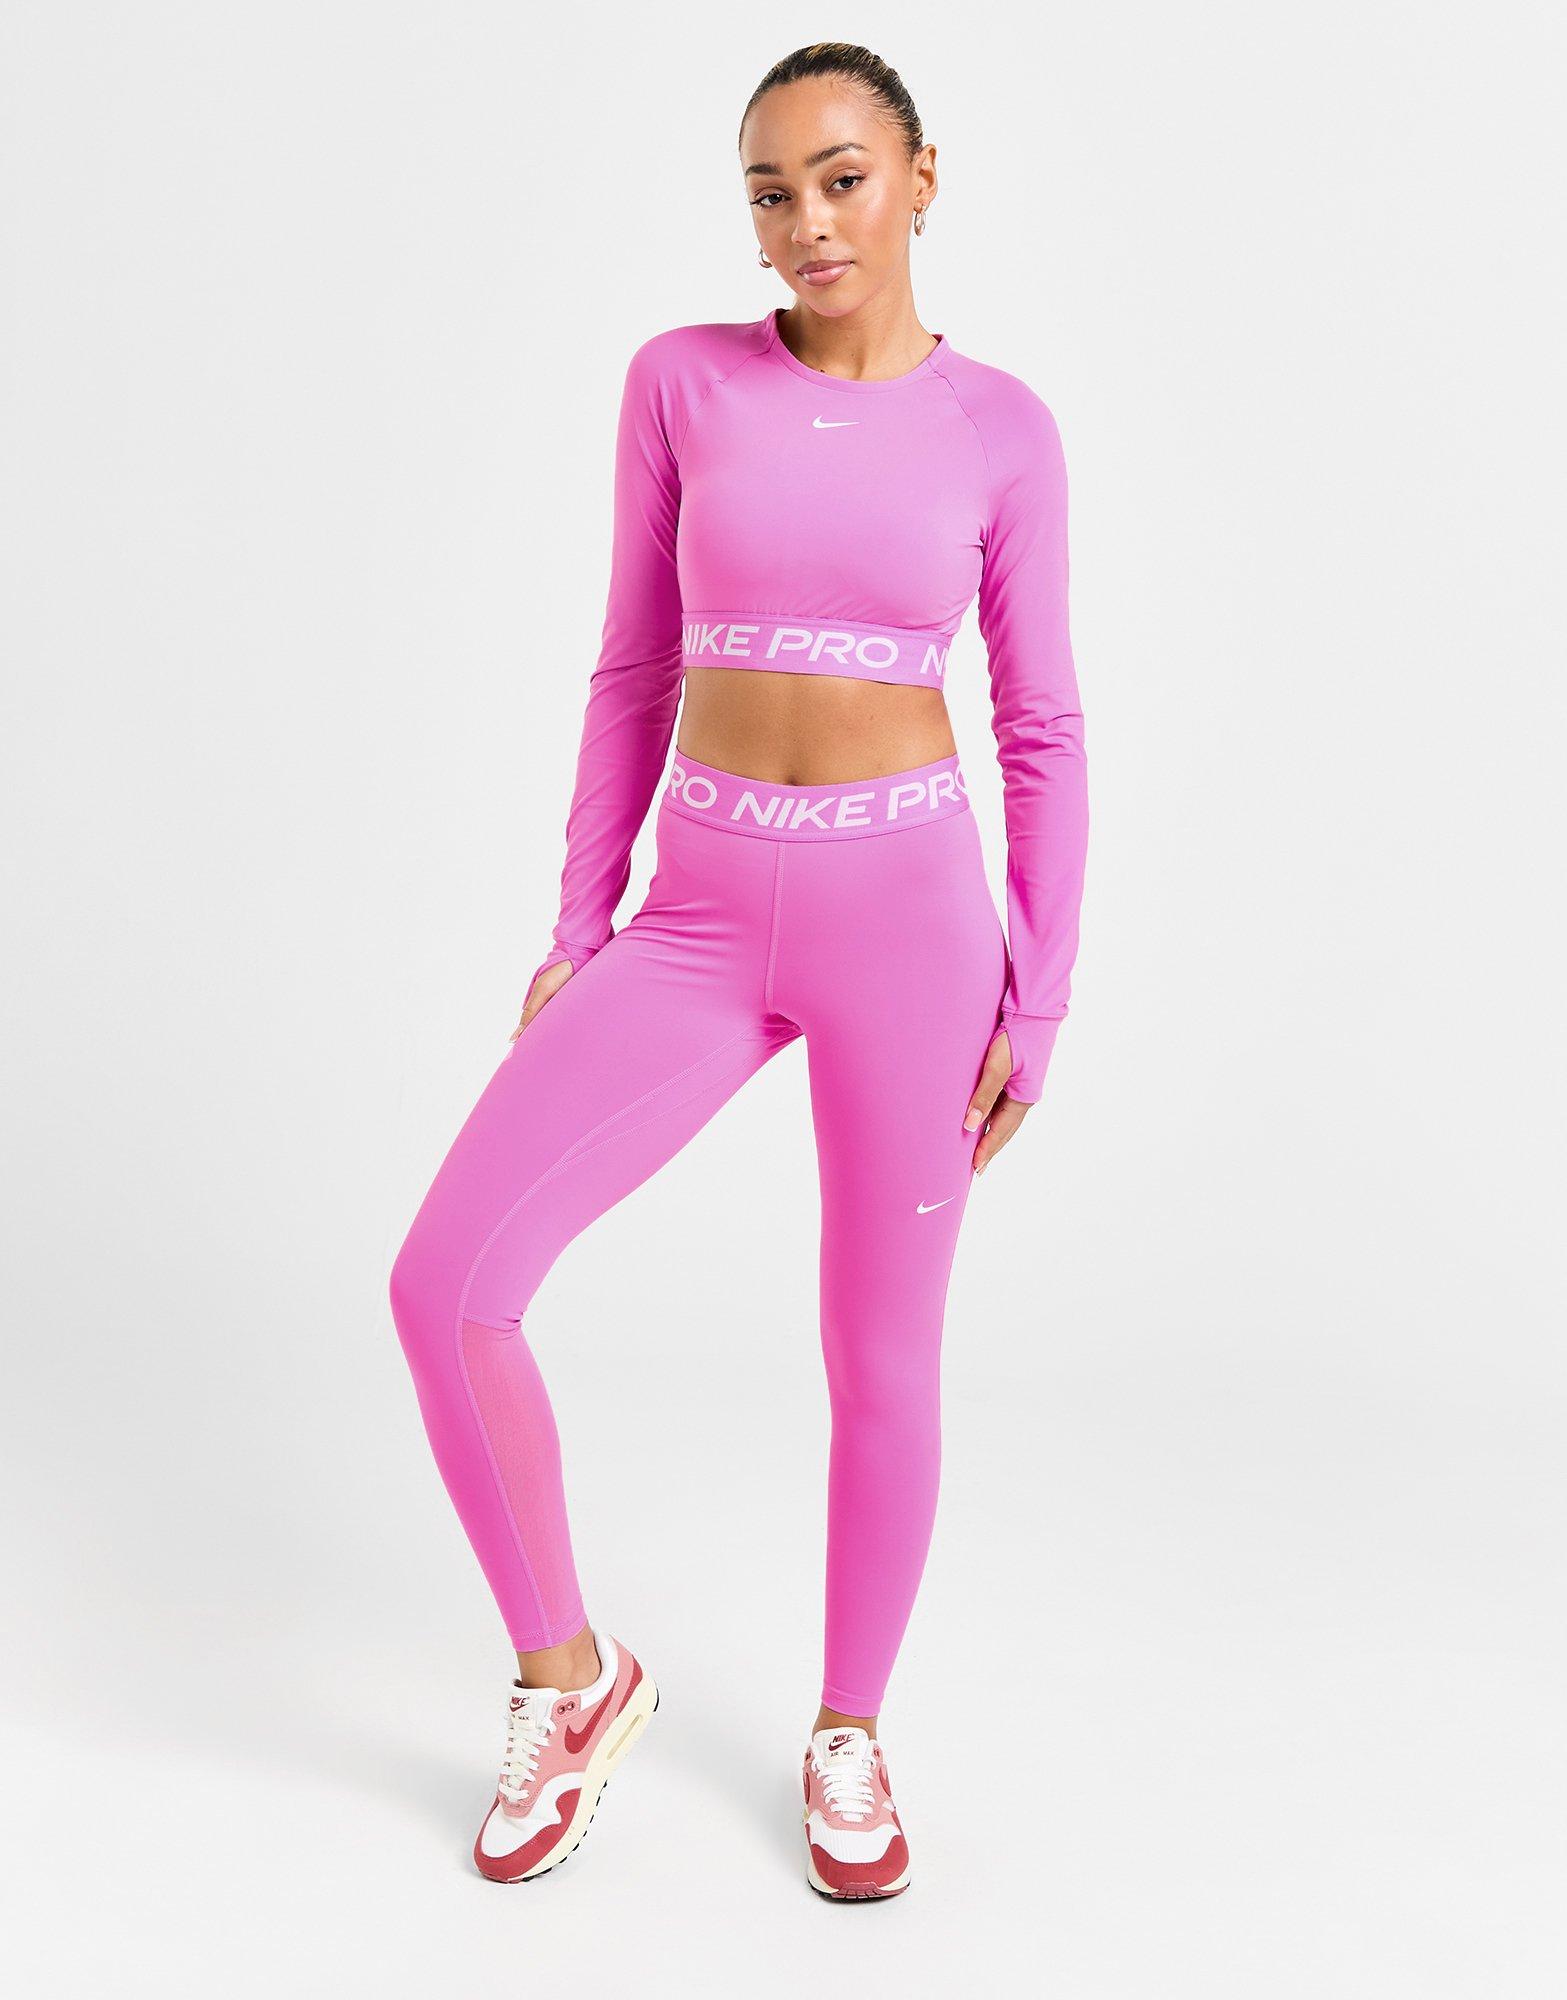 Nike Training Nike Pro Training Space Dye cropped leggings in pink